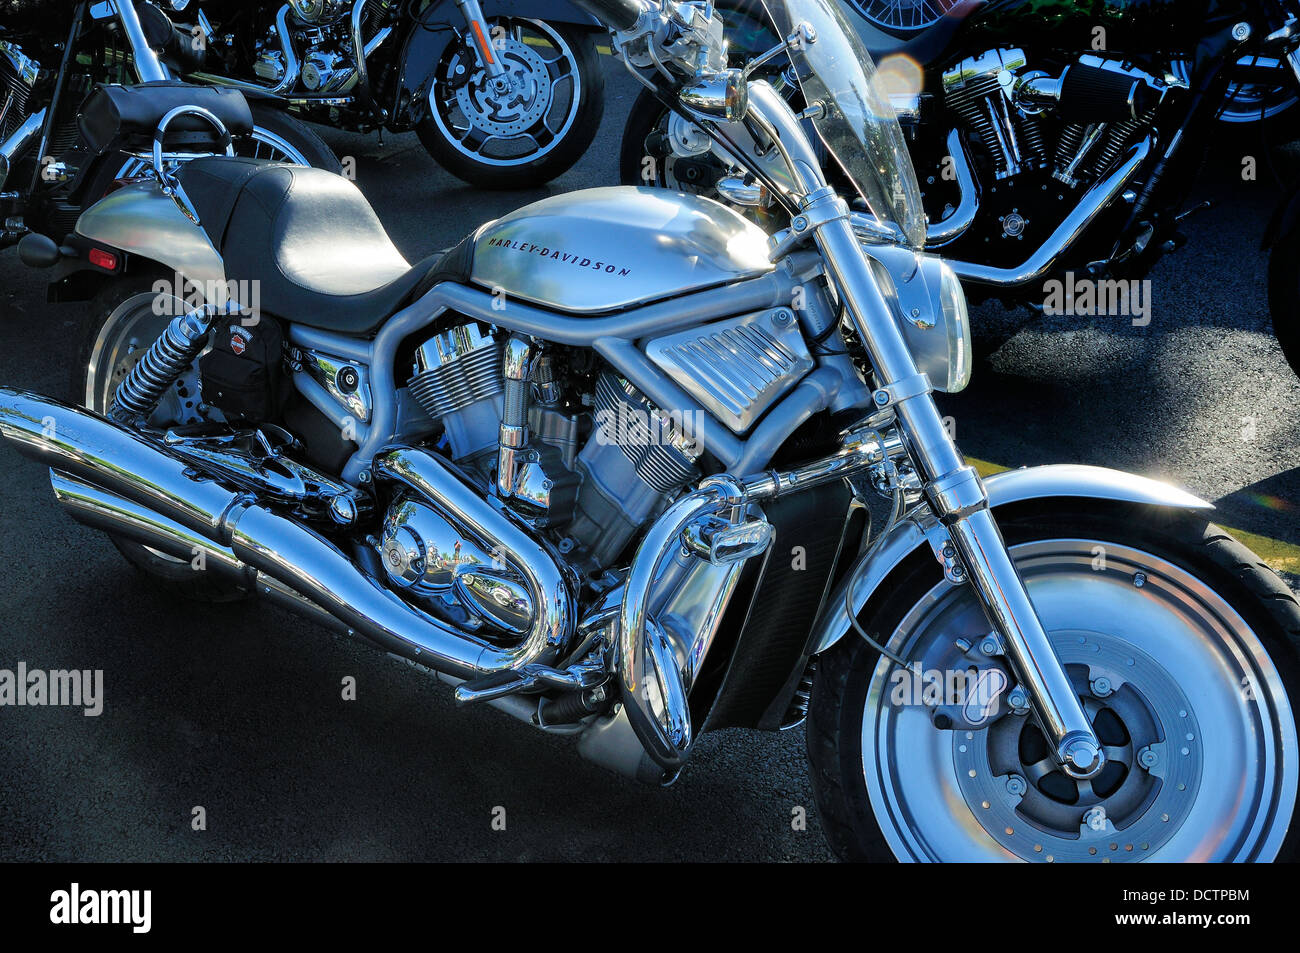 Harley Davidson Moto / s V-biella Foto stock - Alamy